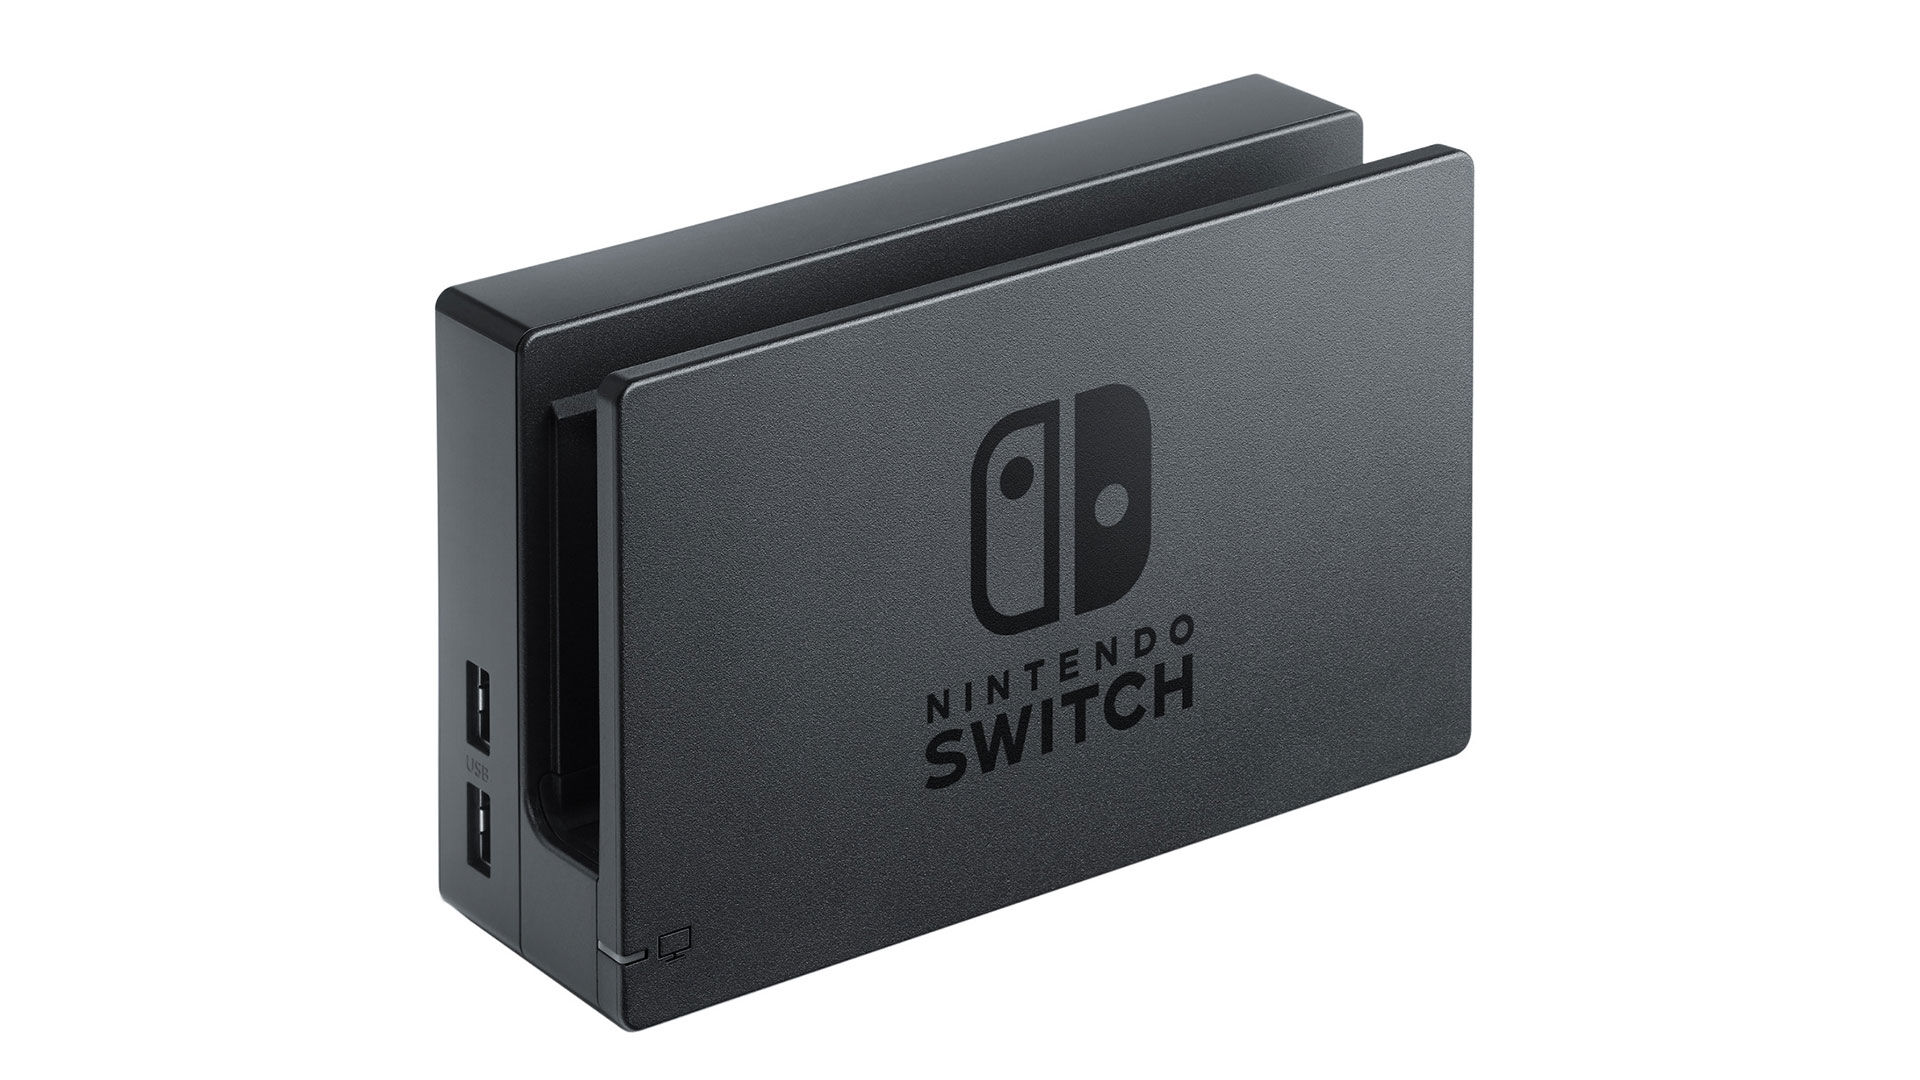 Boîtier pour jeux Nintendo Switch pour 12 jeux, 4 par boîtier